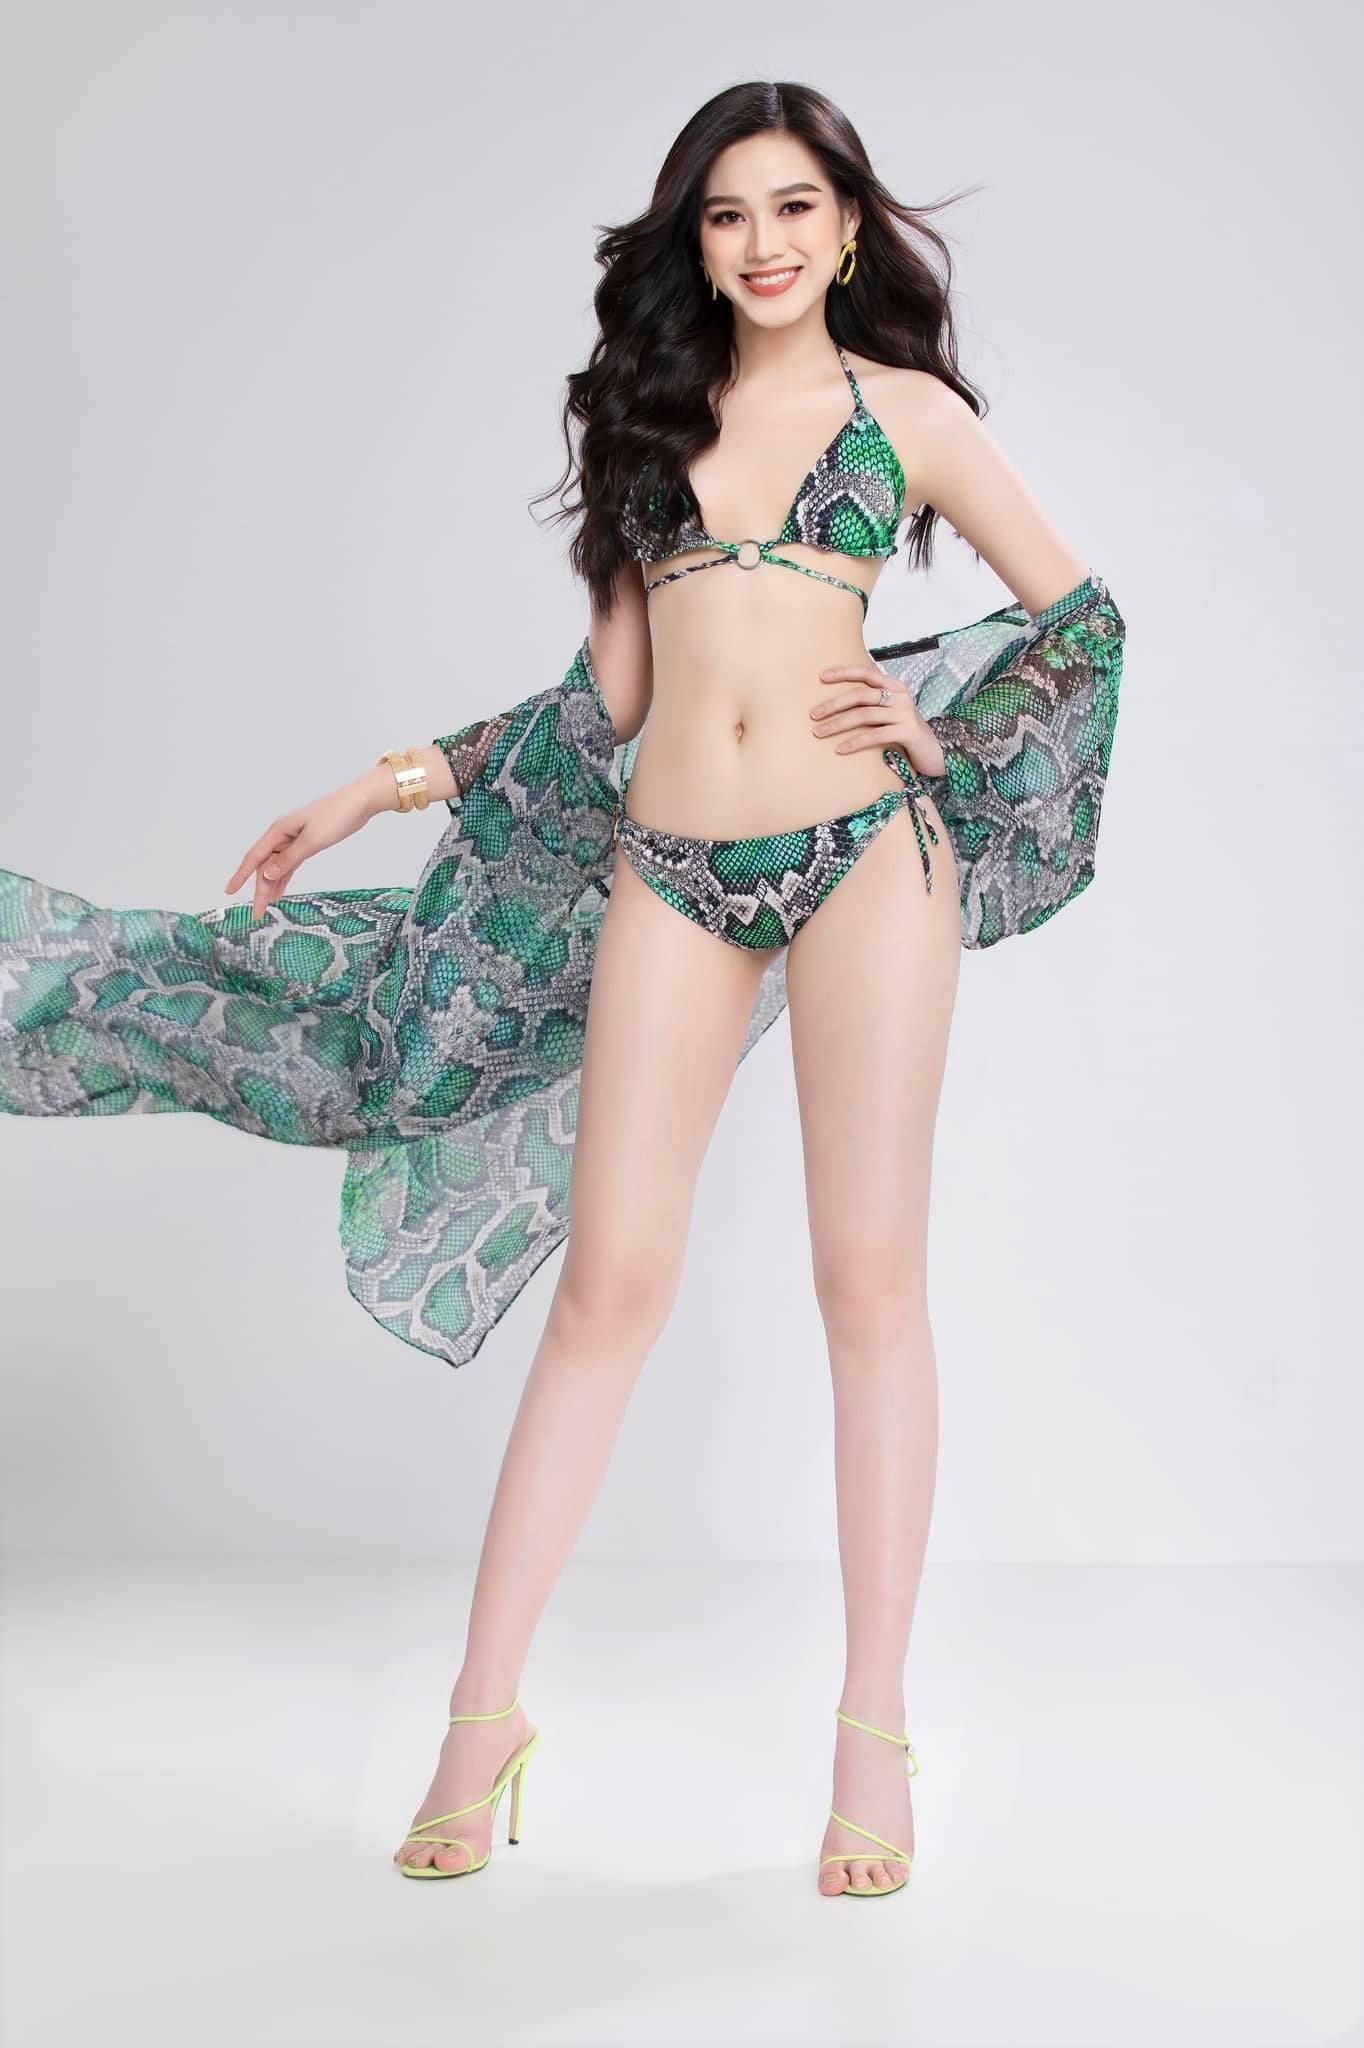 Đỗ Thị Hà khoe ảnh diện bikini cực nóng bỏng, body cực phẩm khiến fan 'không thể rời mắt'